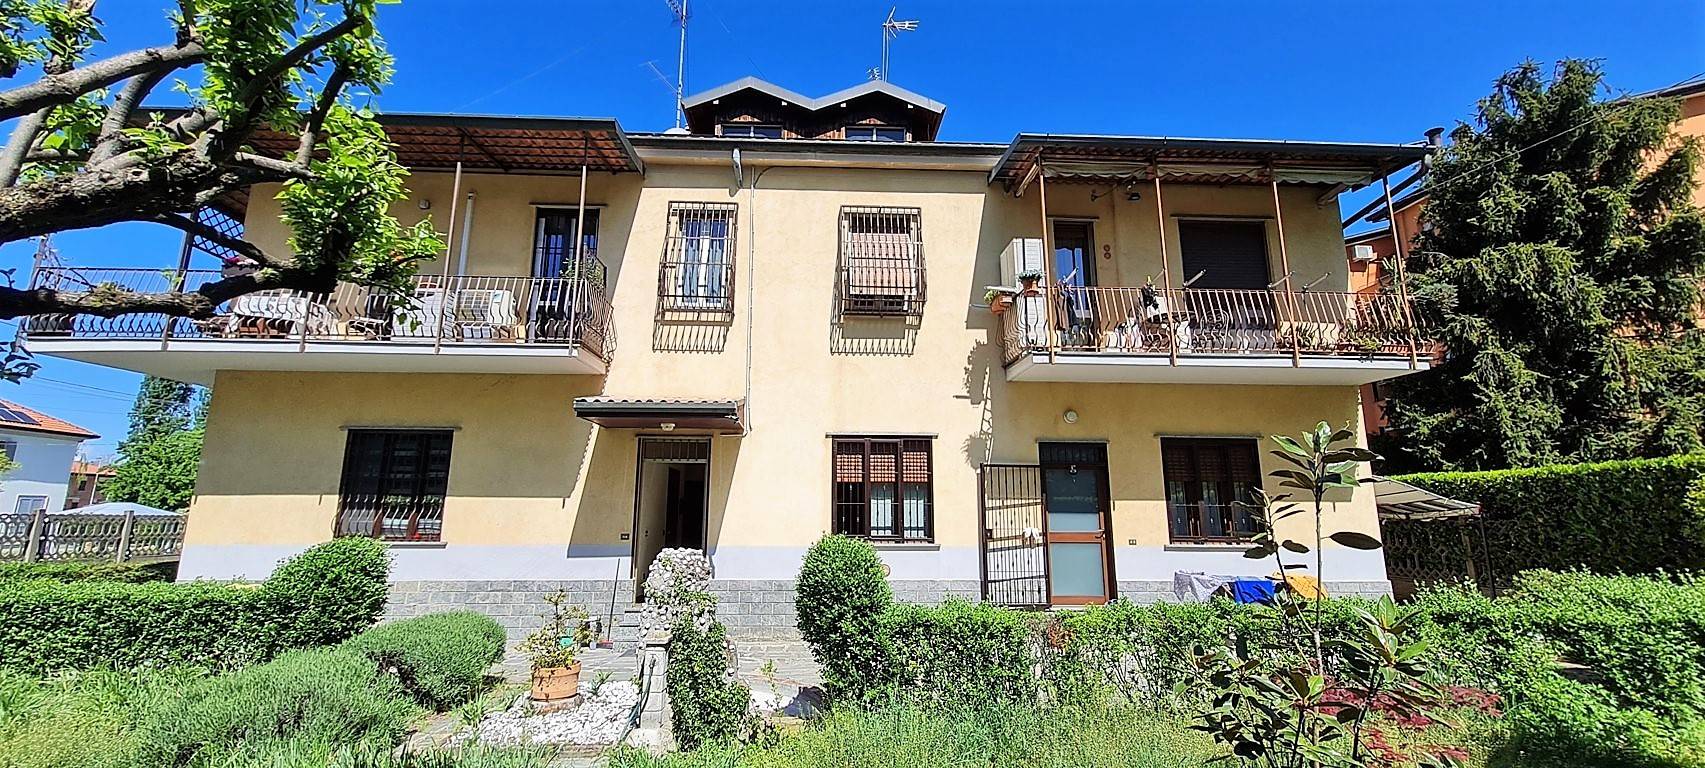 Appartamento in vendita a Desio, 3 locali, zona Località: CENTRO, prezzo € 185.000 | PortaleAgenzieImmobiliari.it